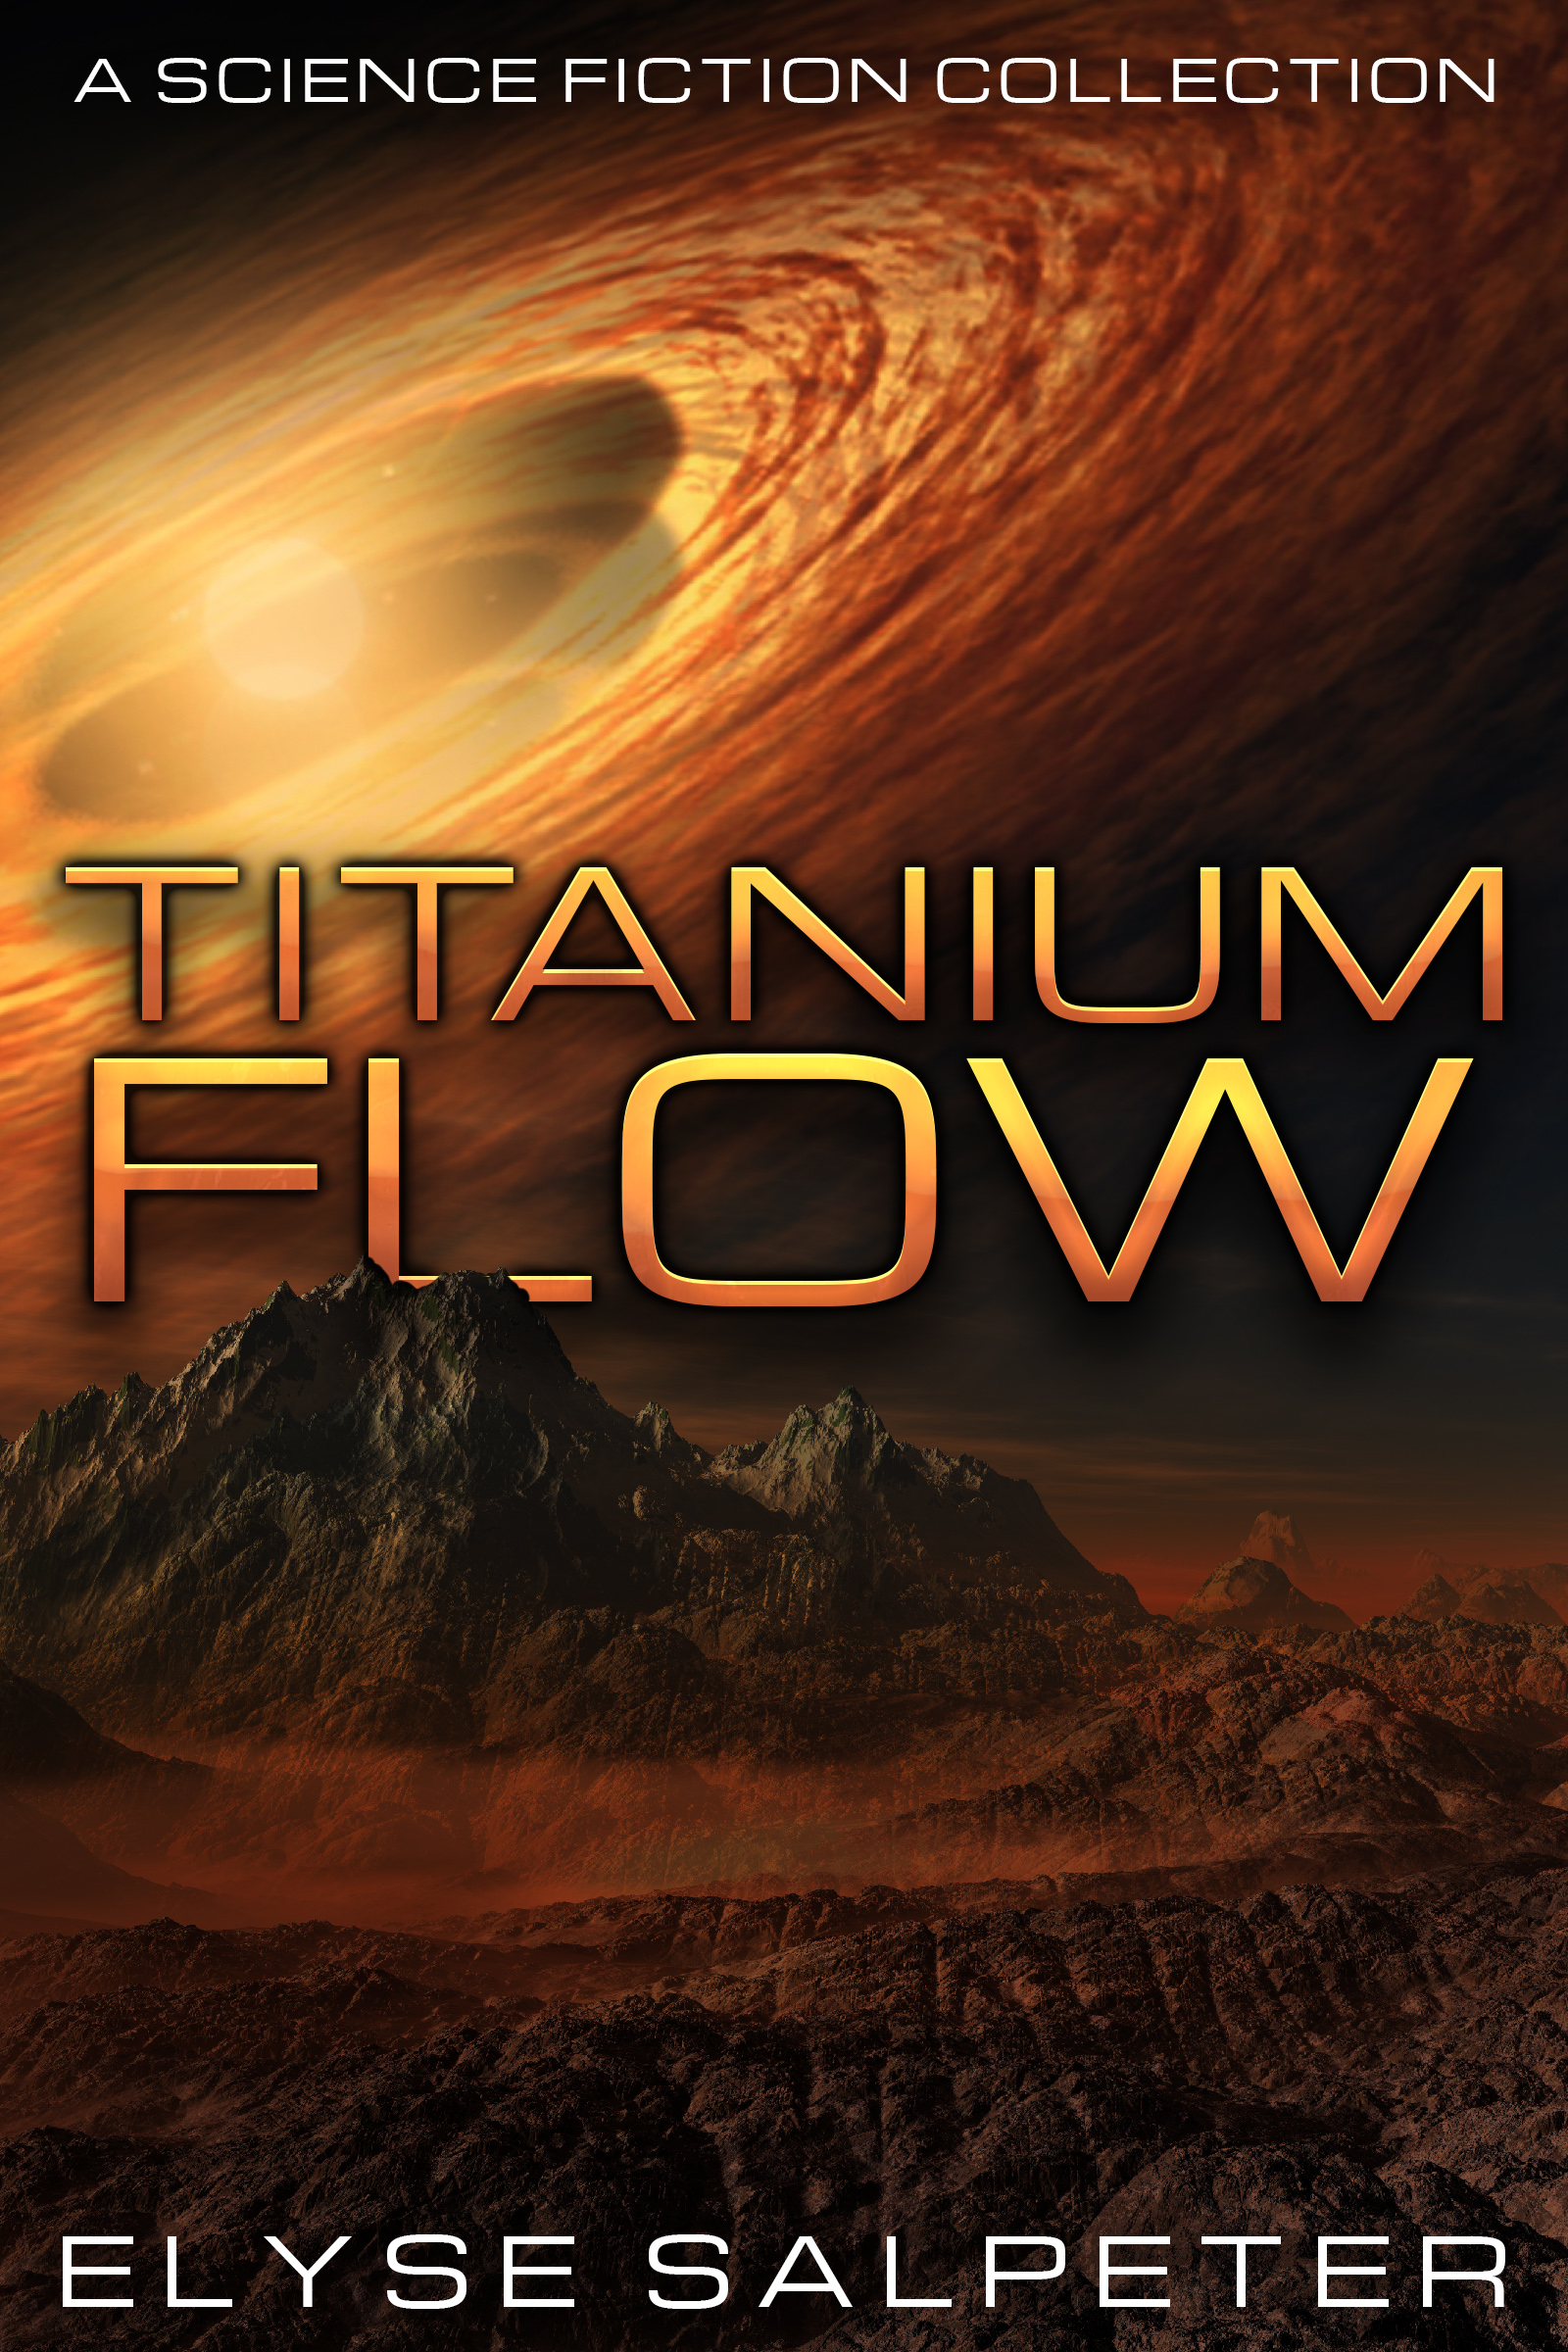 Time-travel Tuesday: Titanium Flow